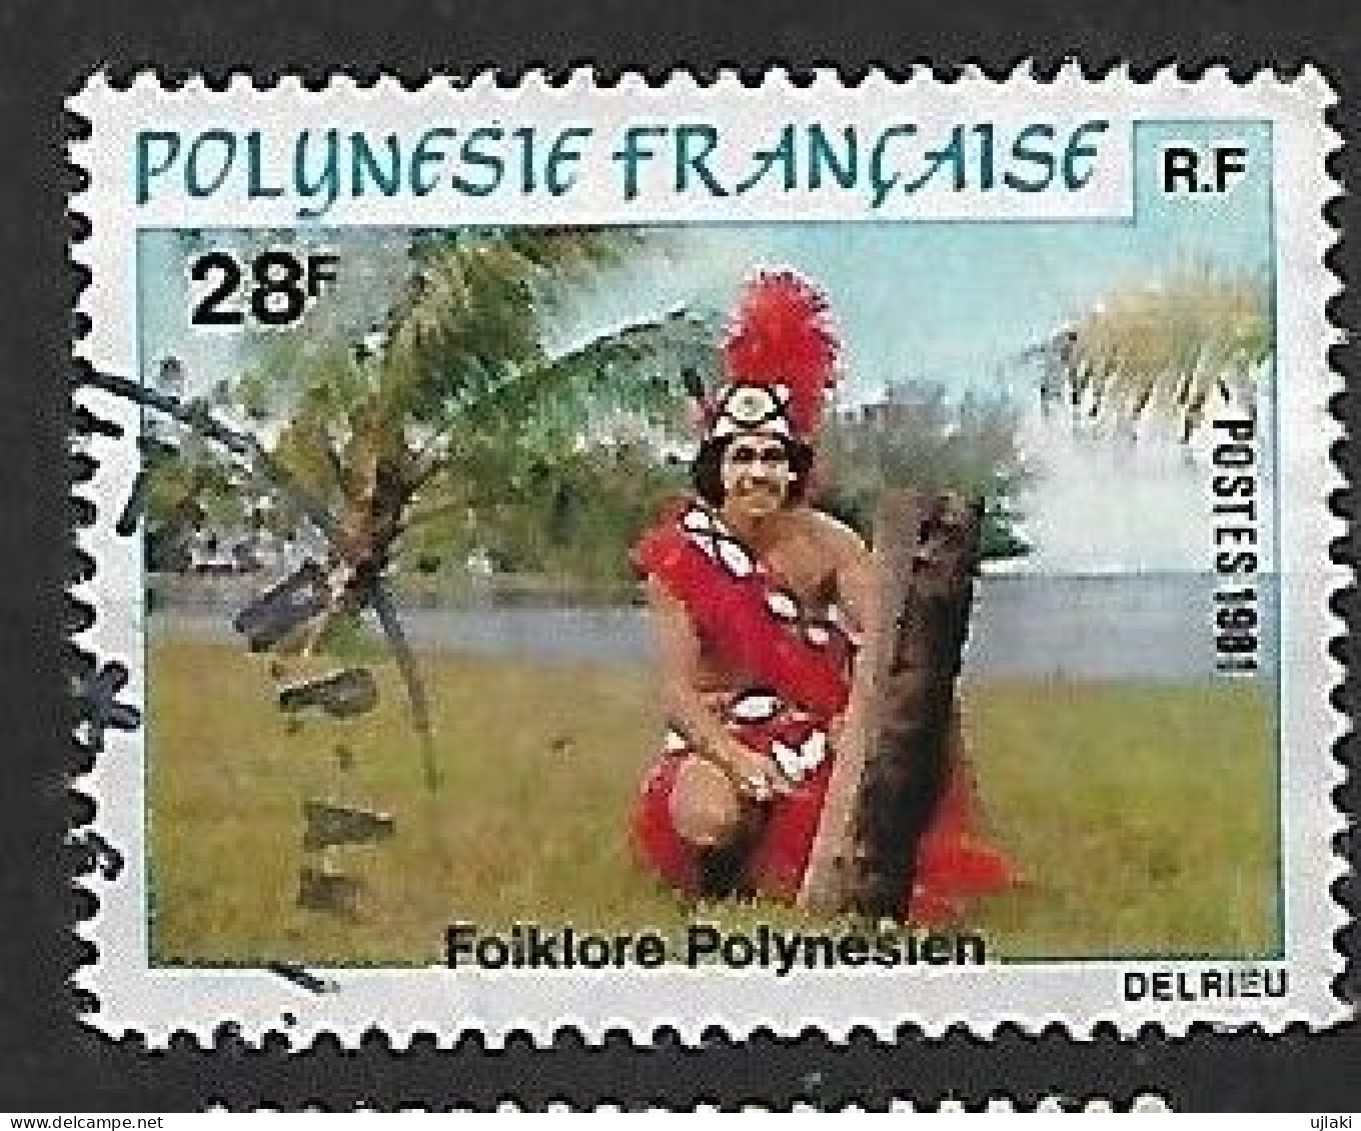 POLYNESIE FRANCAISE: Folklore Polynésien:danse    N°166  Année:1981 - Oblitérés